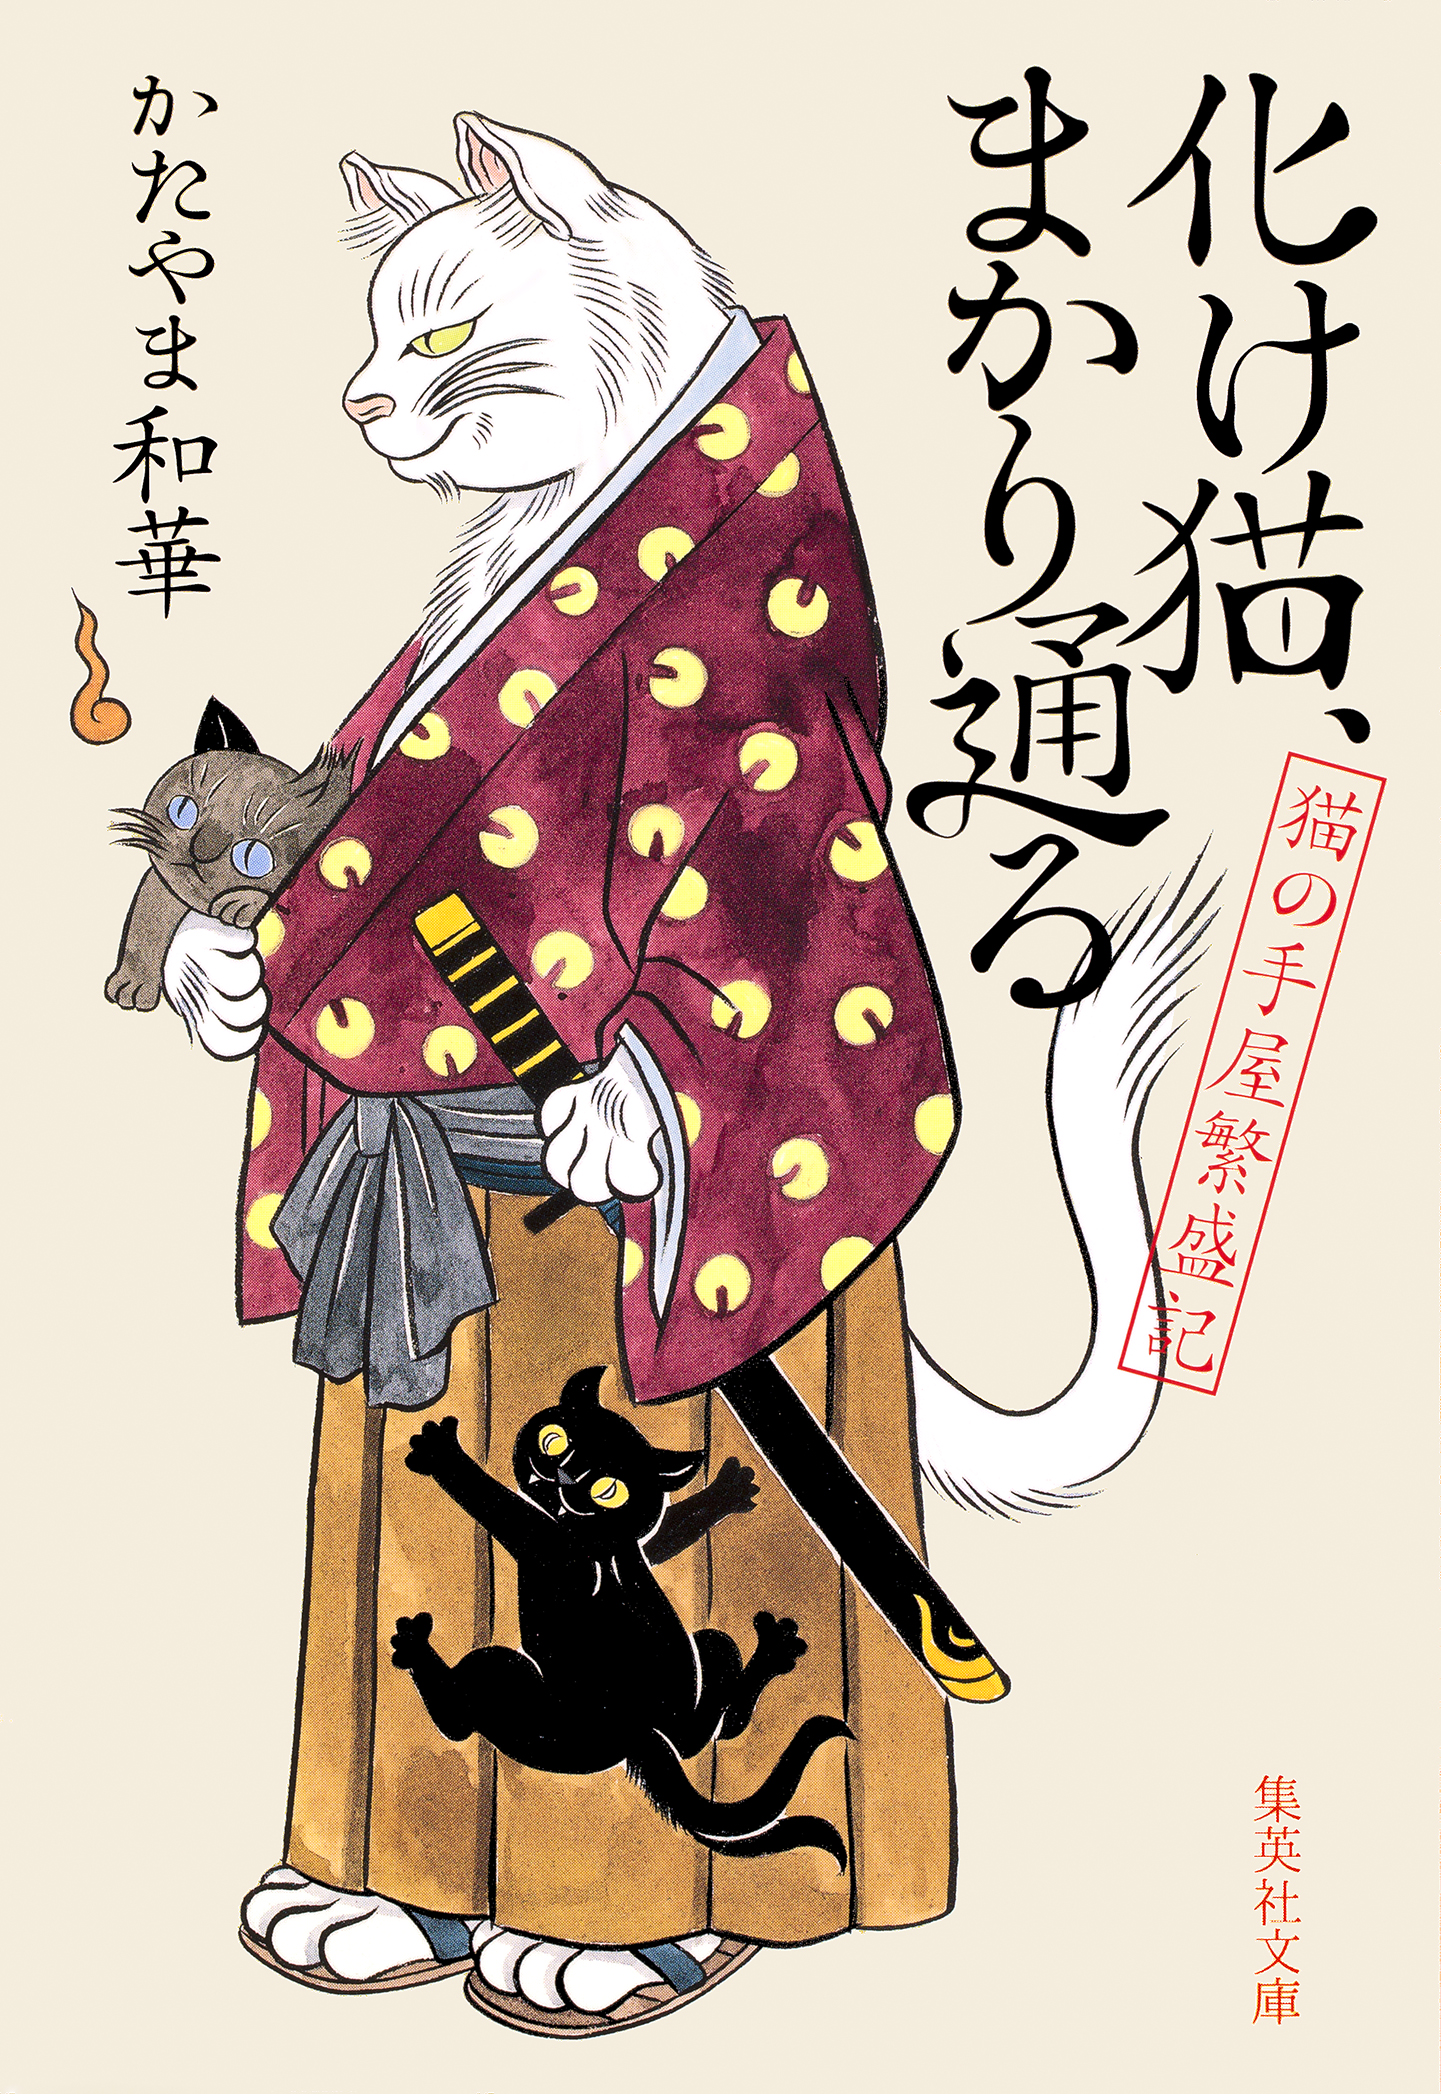 化け猫、まかり通る 猫の手屋繁盛記 - かたやま和華 - 漫画・無料試し